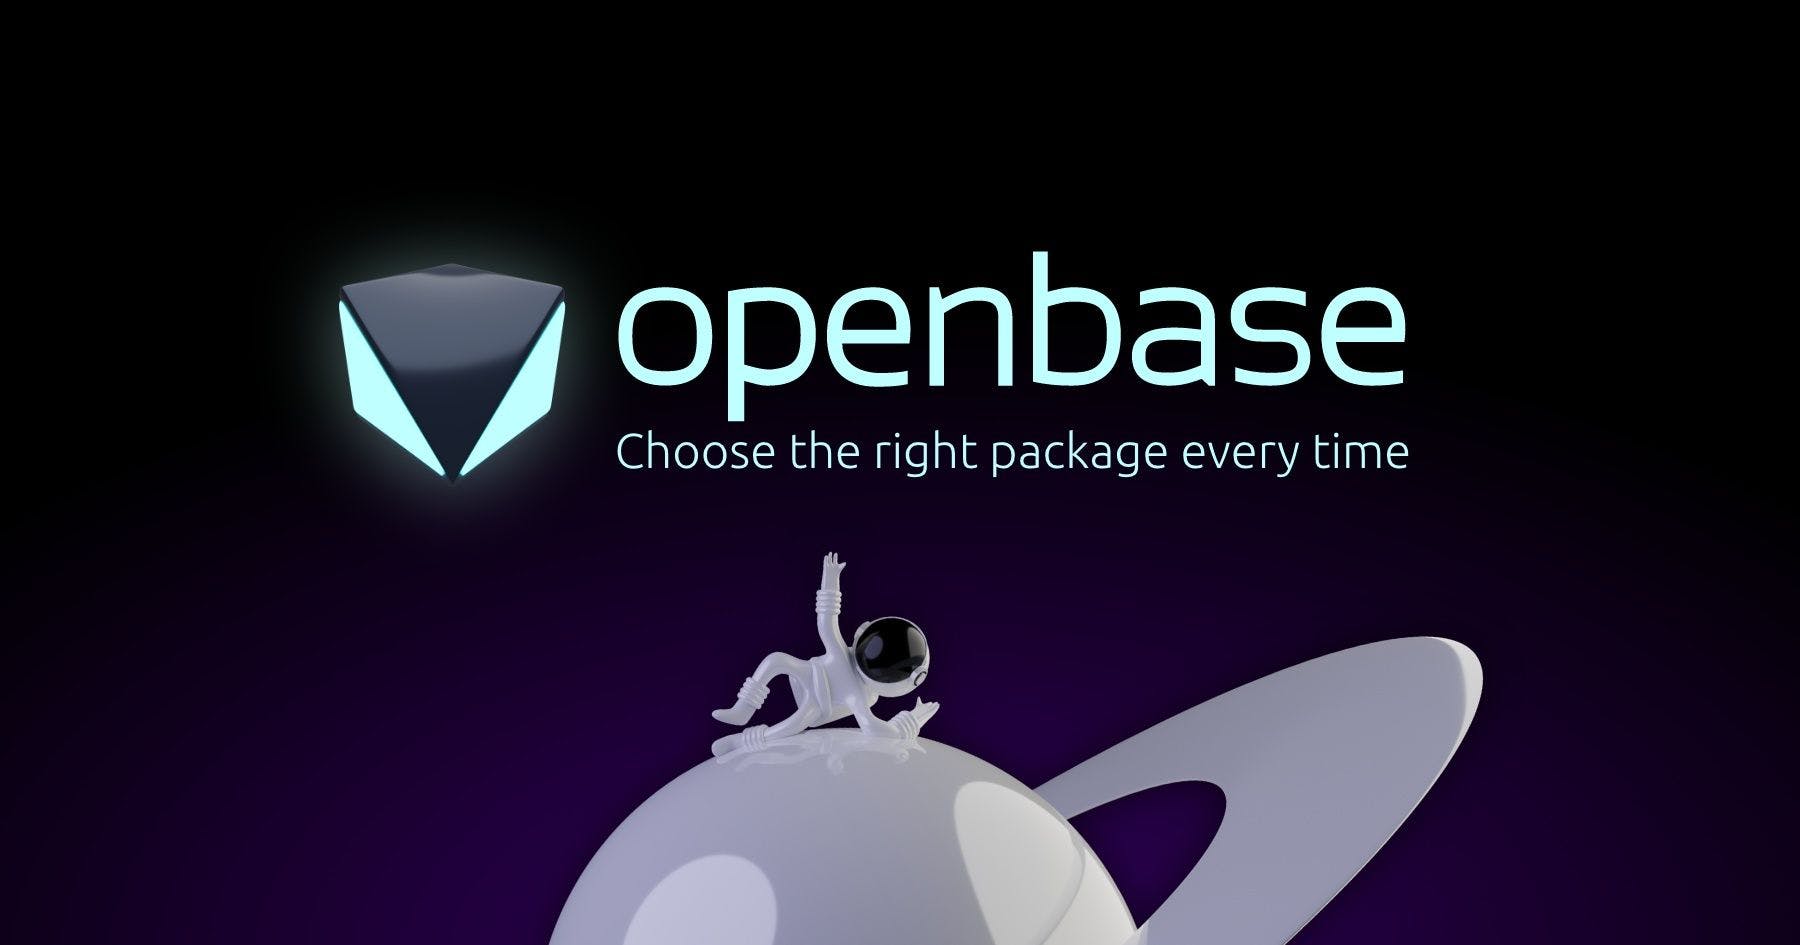 Openbase